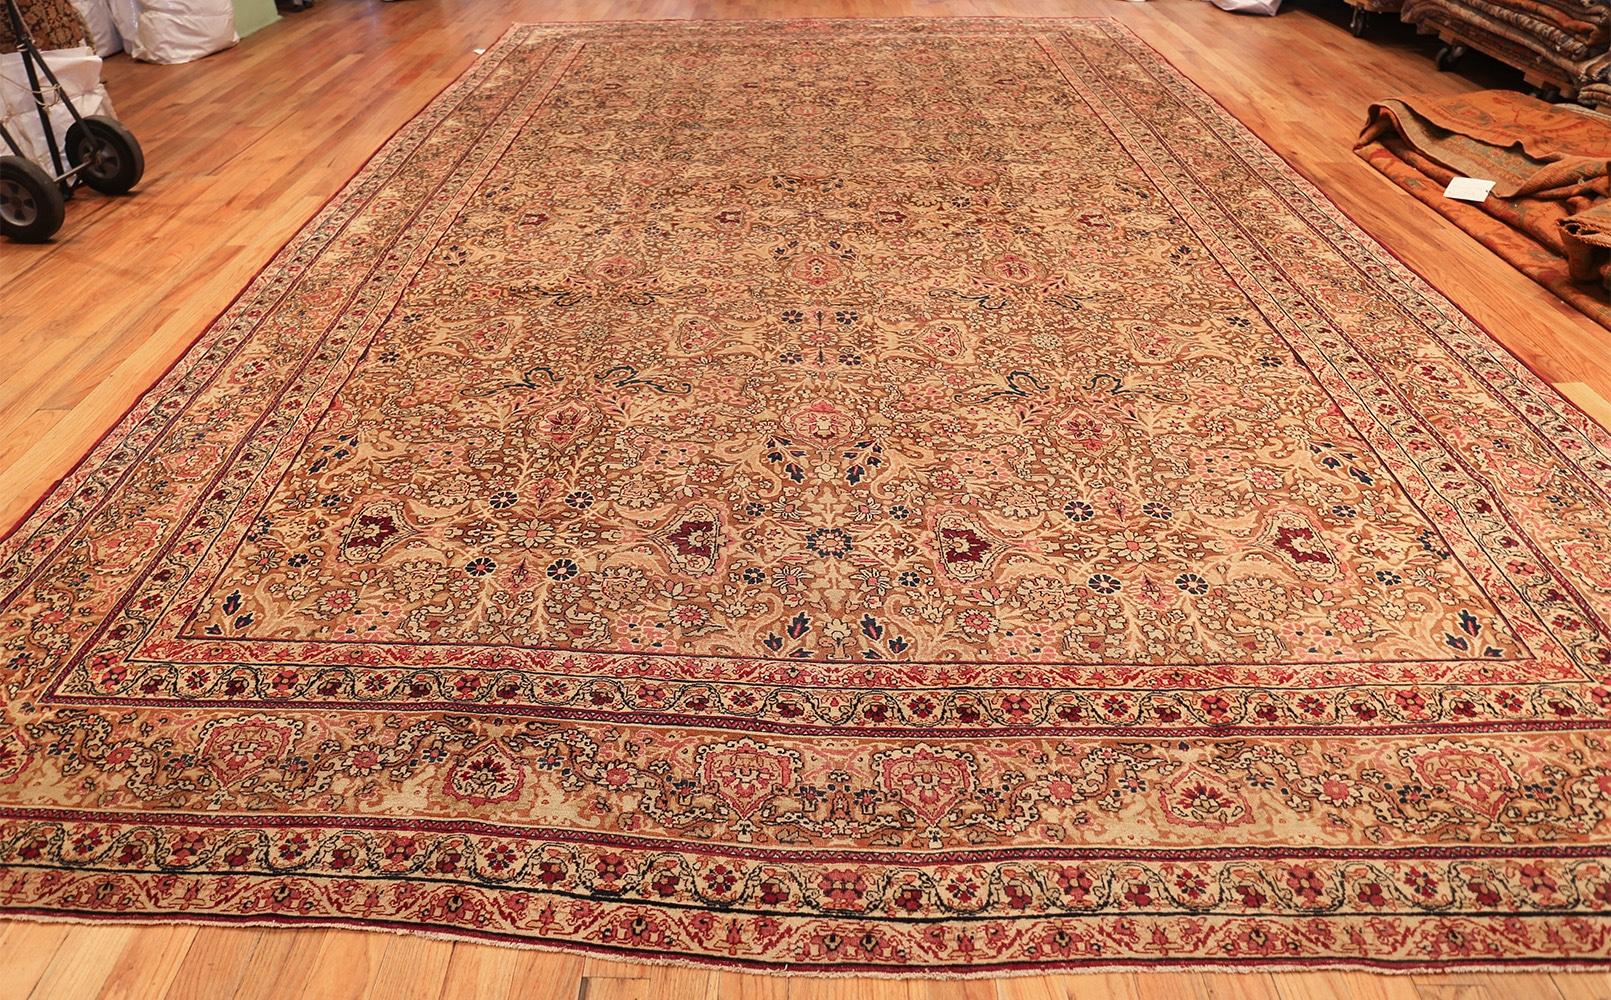 Antiker persischer Kerman-Teppich, Herkunftsland: Persien, datiert gegen Ende des 19. Größe: 3,51 m x 5,41 m (11 ft. 6 in x 17 ft. 9 in)

Dieser unglaubliche Kerman-Teppich aus dem späten 19. Jahrhundert ist eine Hommage an die exquisite